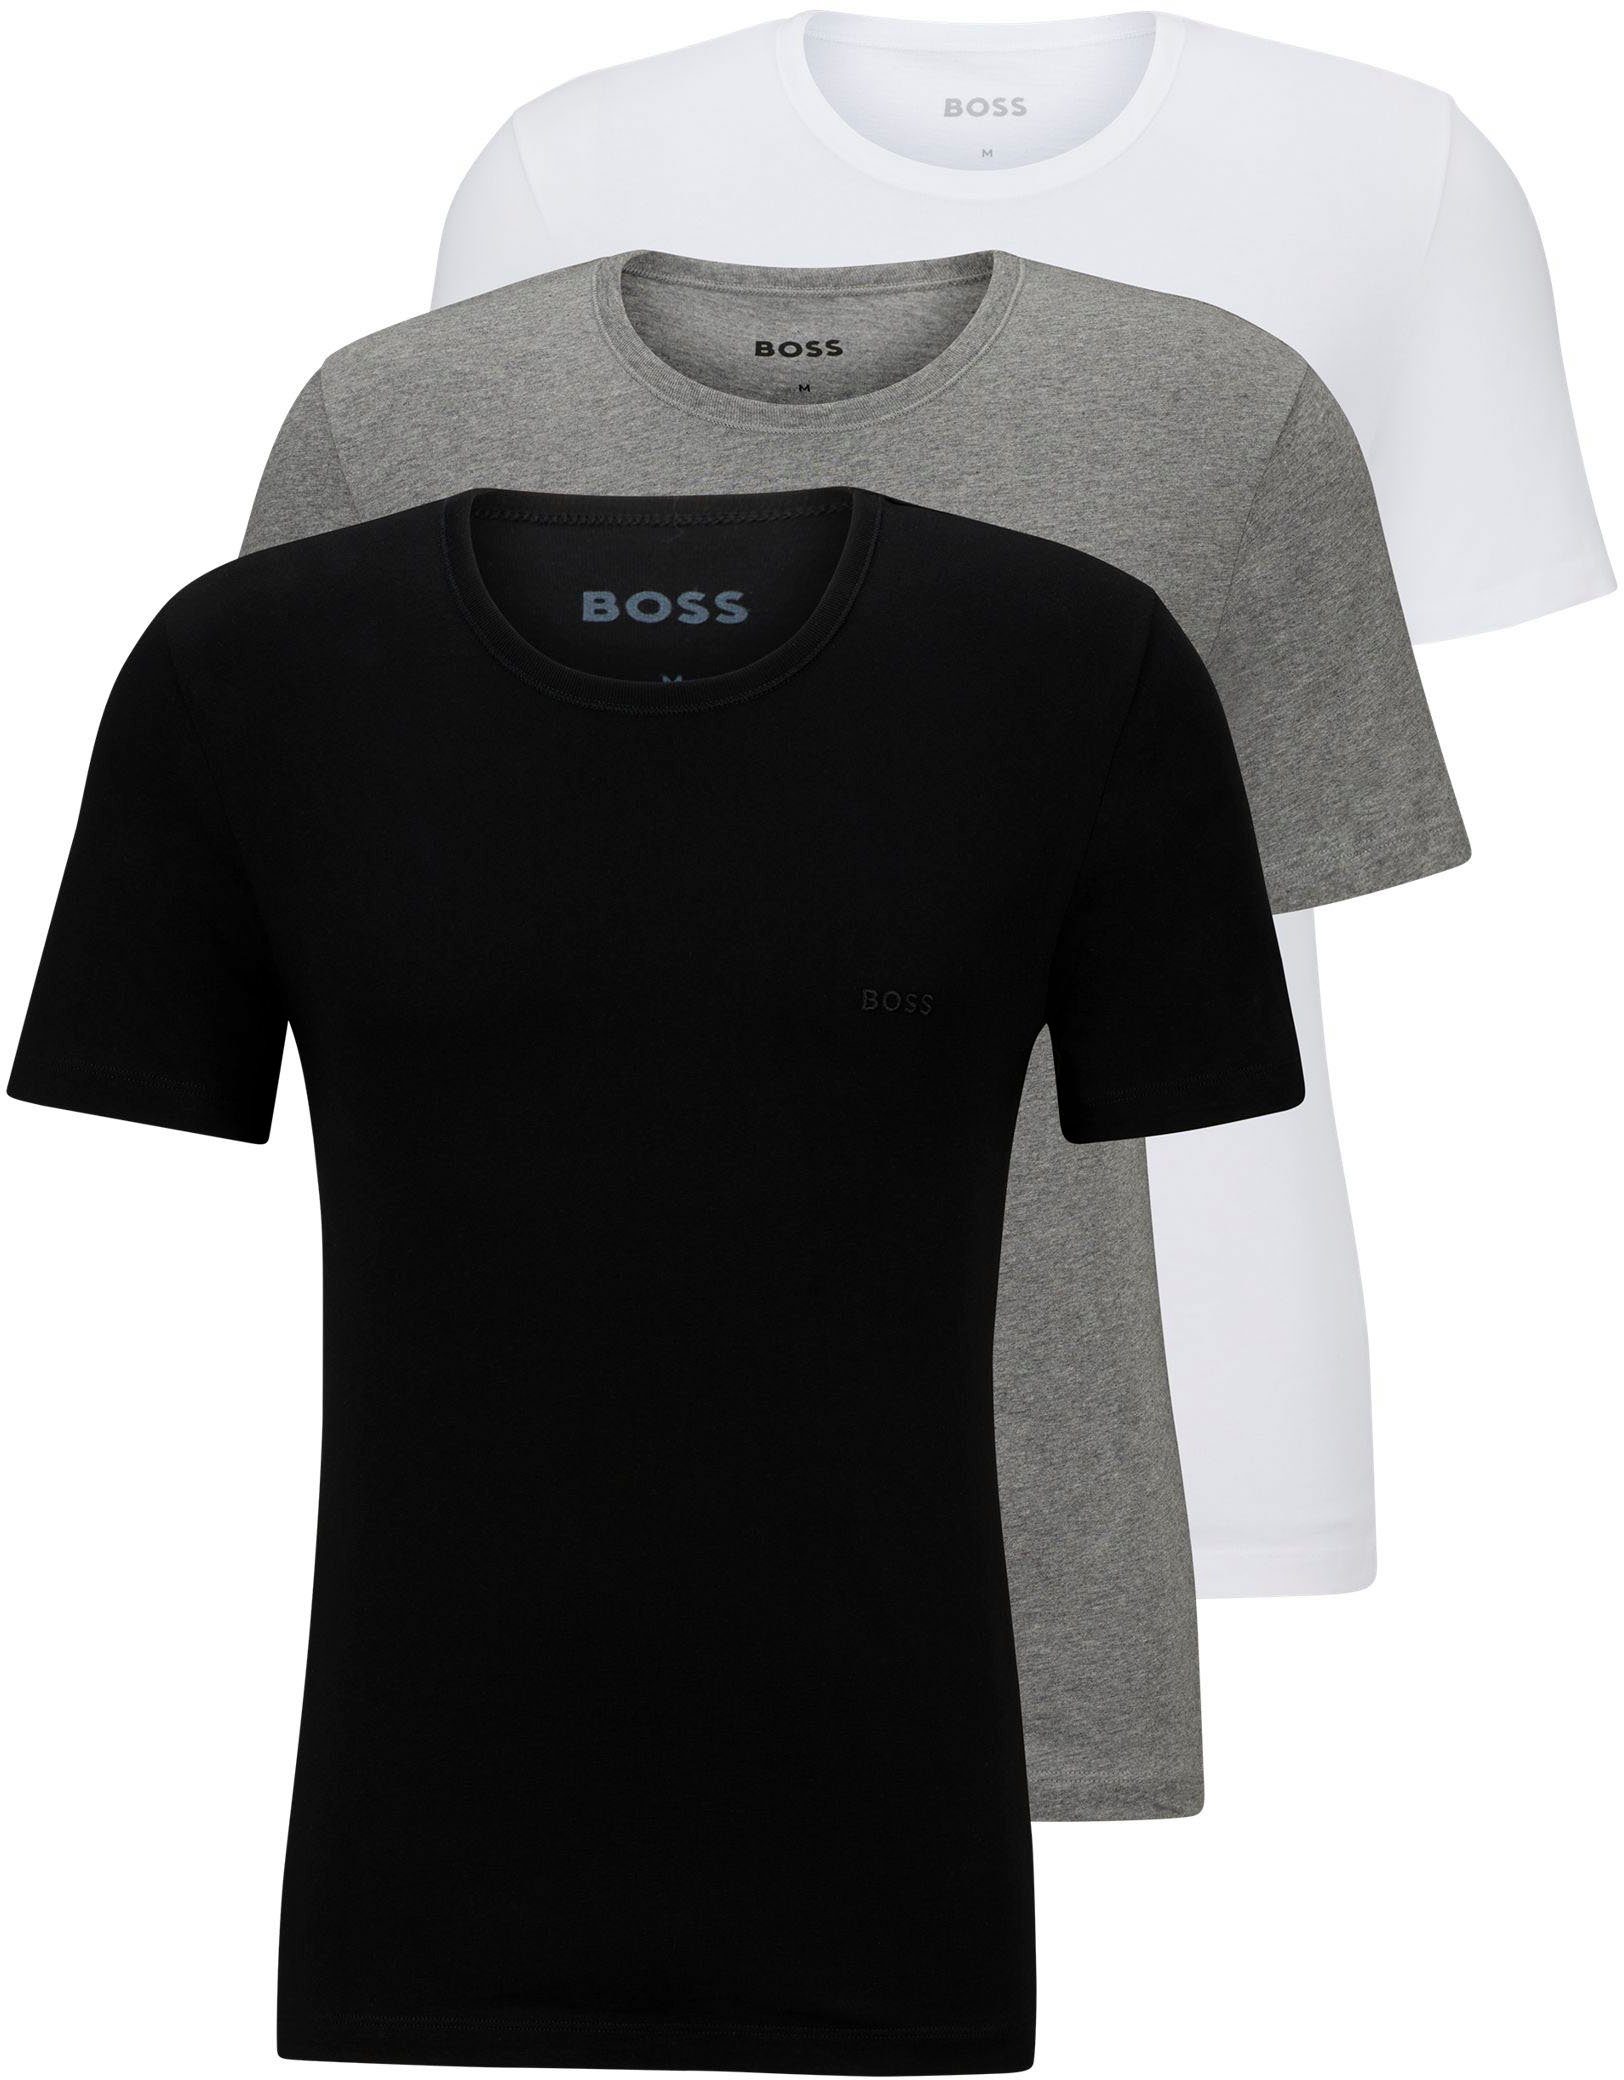 BOSS T-Shirt T-Shirt Rundhals (3er-Pack) mit dezentem BOSS Logo-Print assorted_pre-pack, grau-meliert, schwarz999